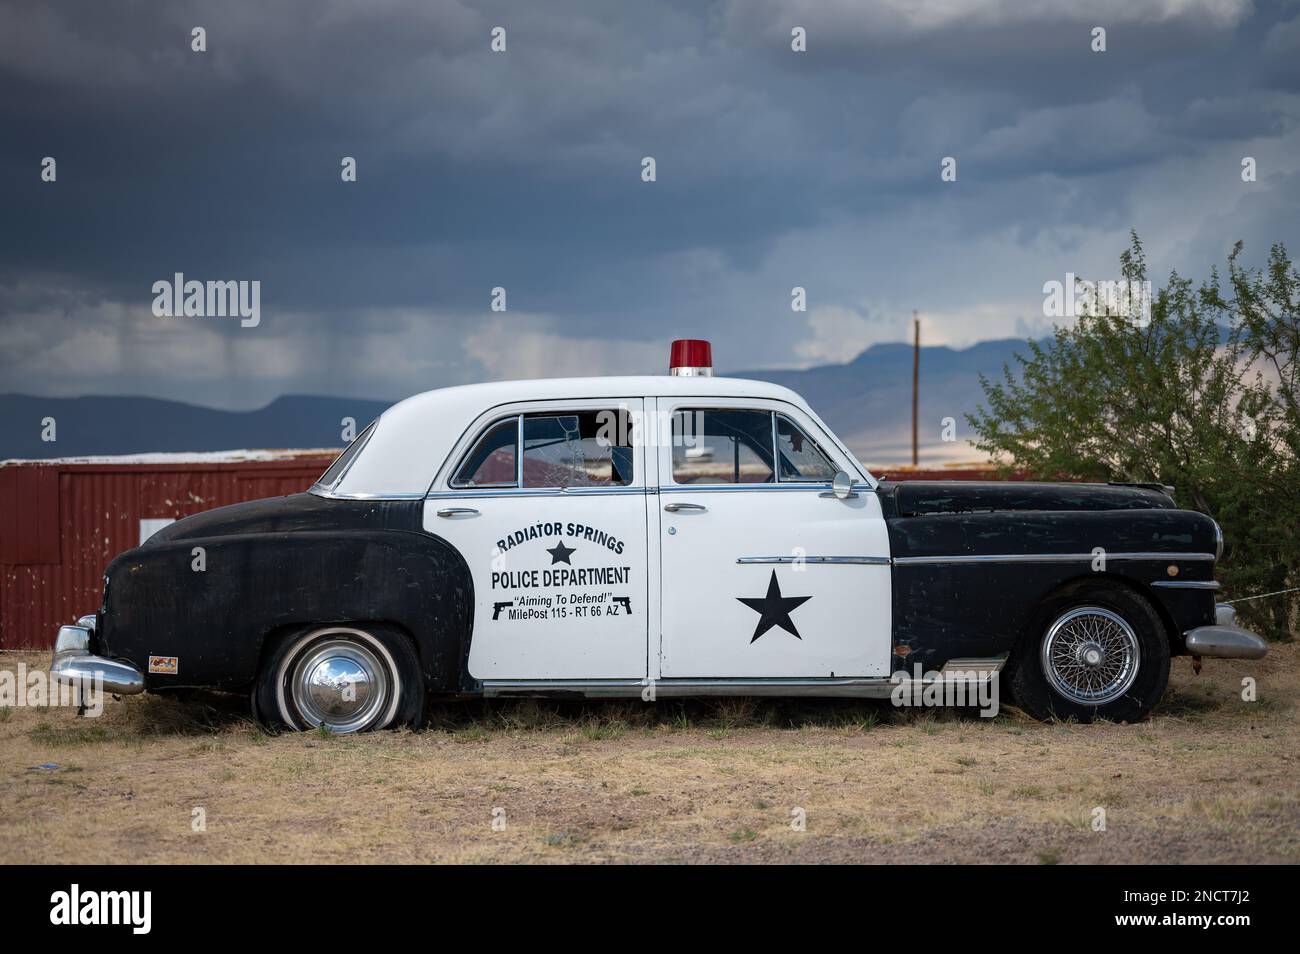 Une vieille voiture de police garée dans des sources de radiateur, c'est un Chrysler Royal de 1950 Banque D'Images